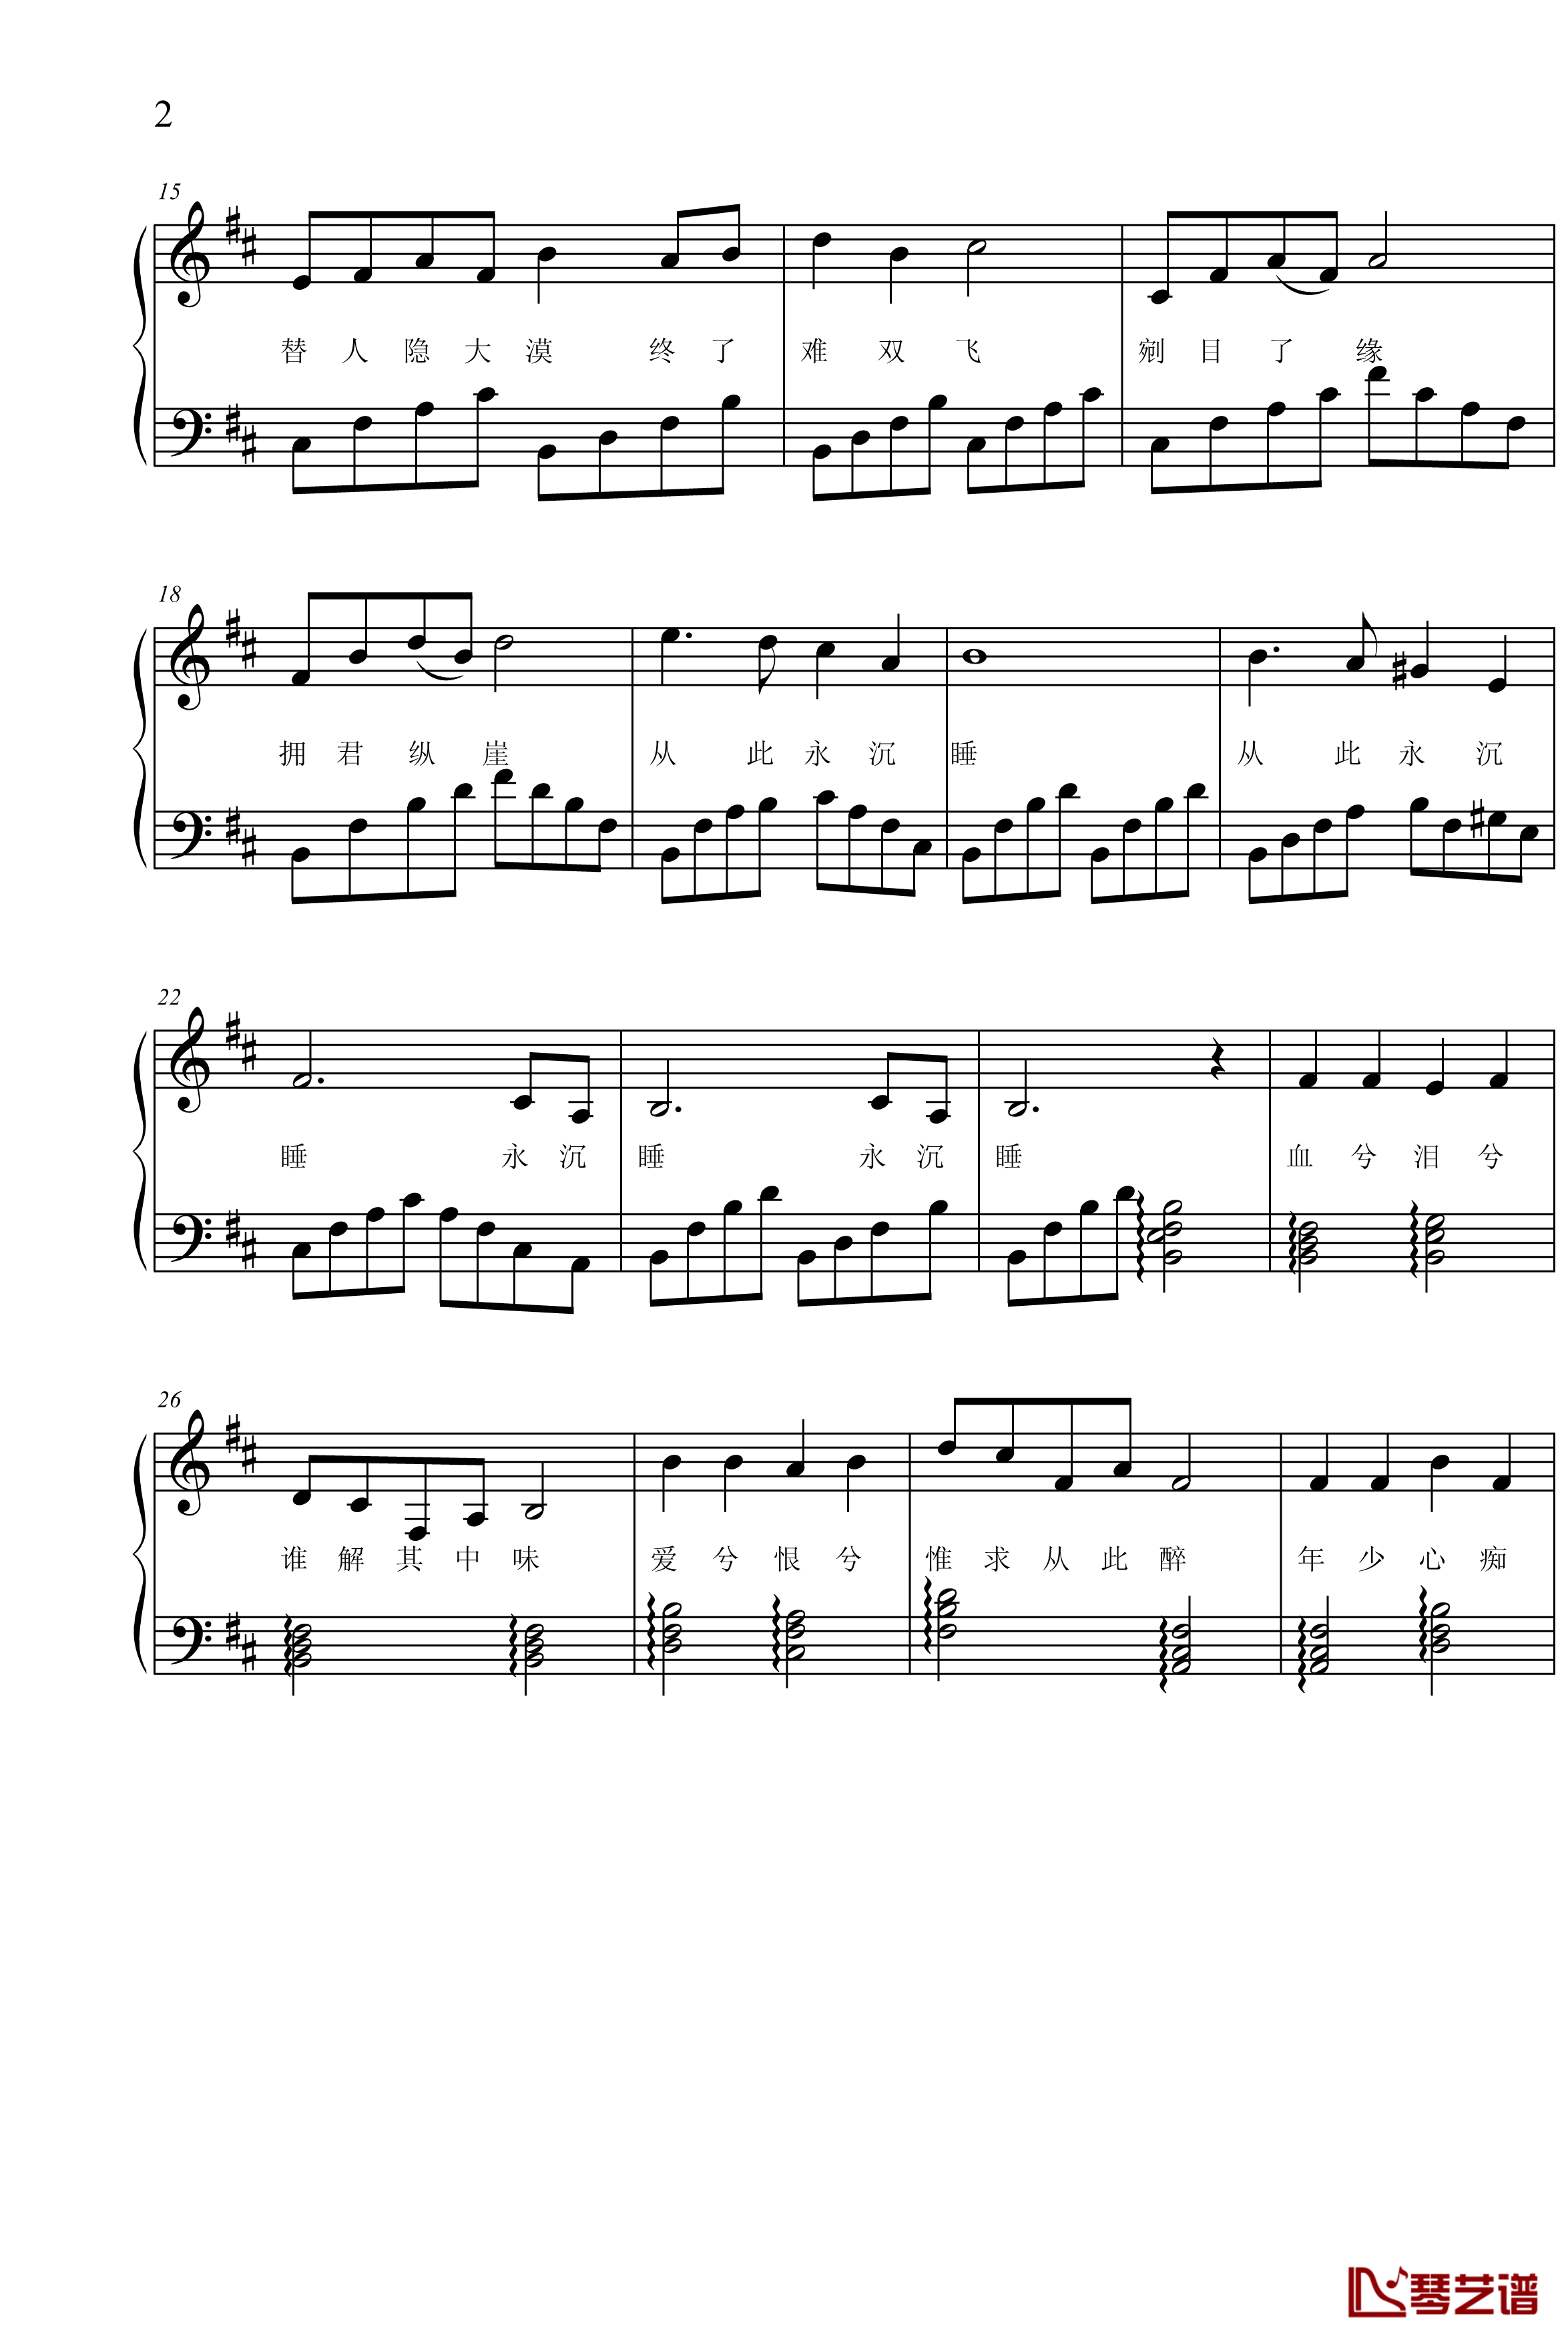 写给阿紫的歌钢琴谱-项海波